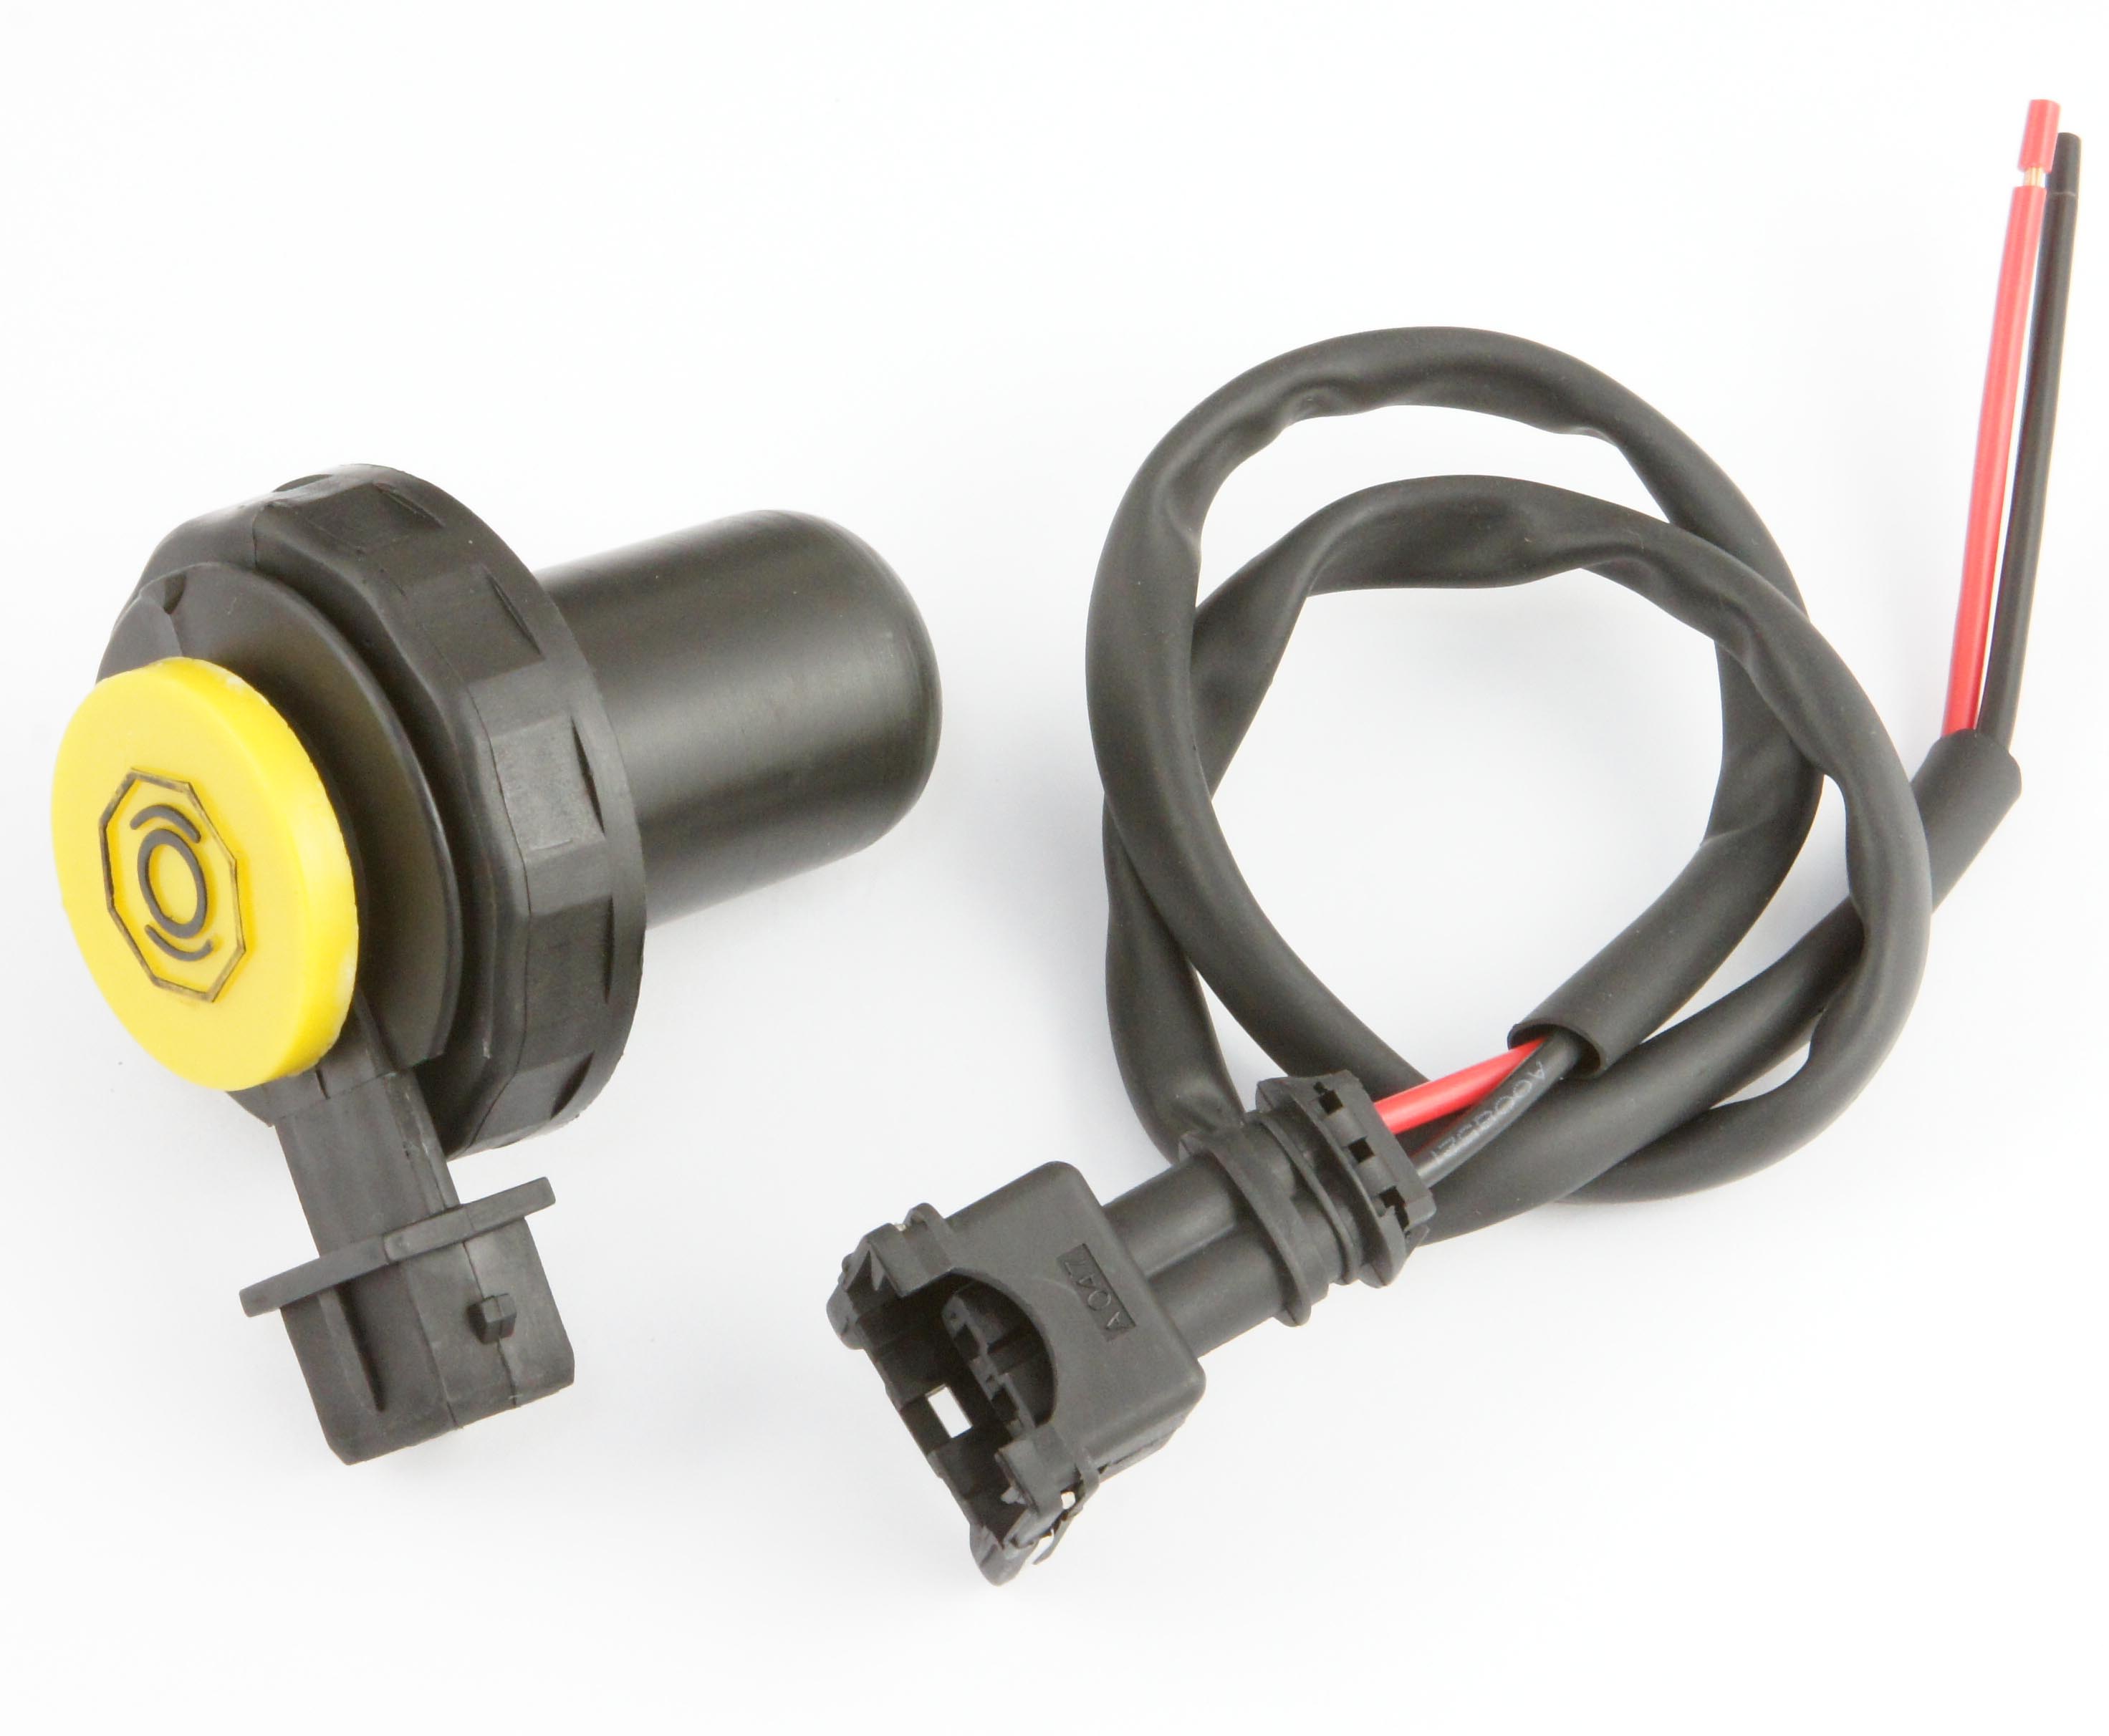 Bremsflüssigkeitsbehälter-Deckel mit 2-poligem Stecker und Kabelkontakten